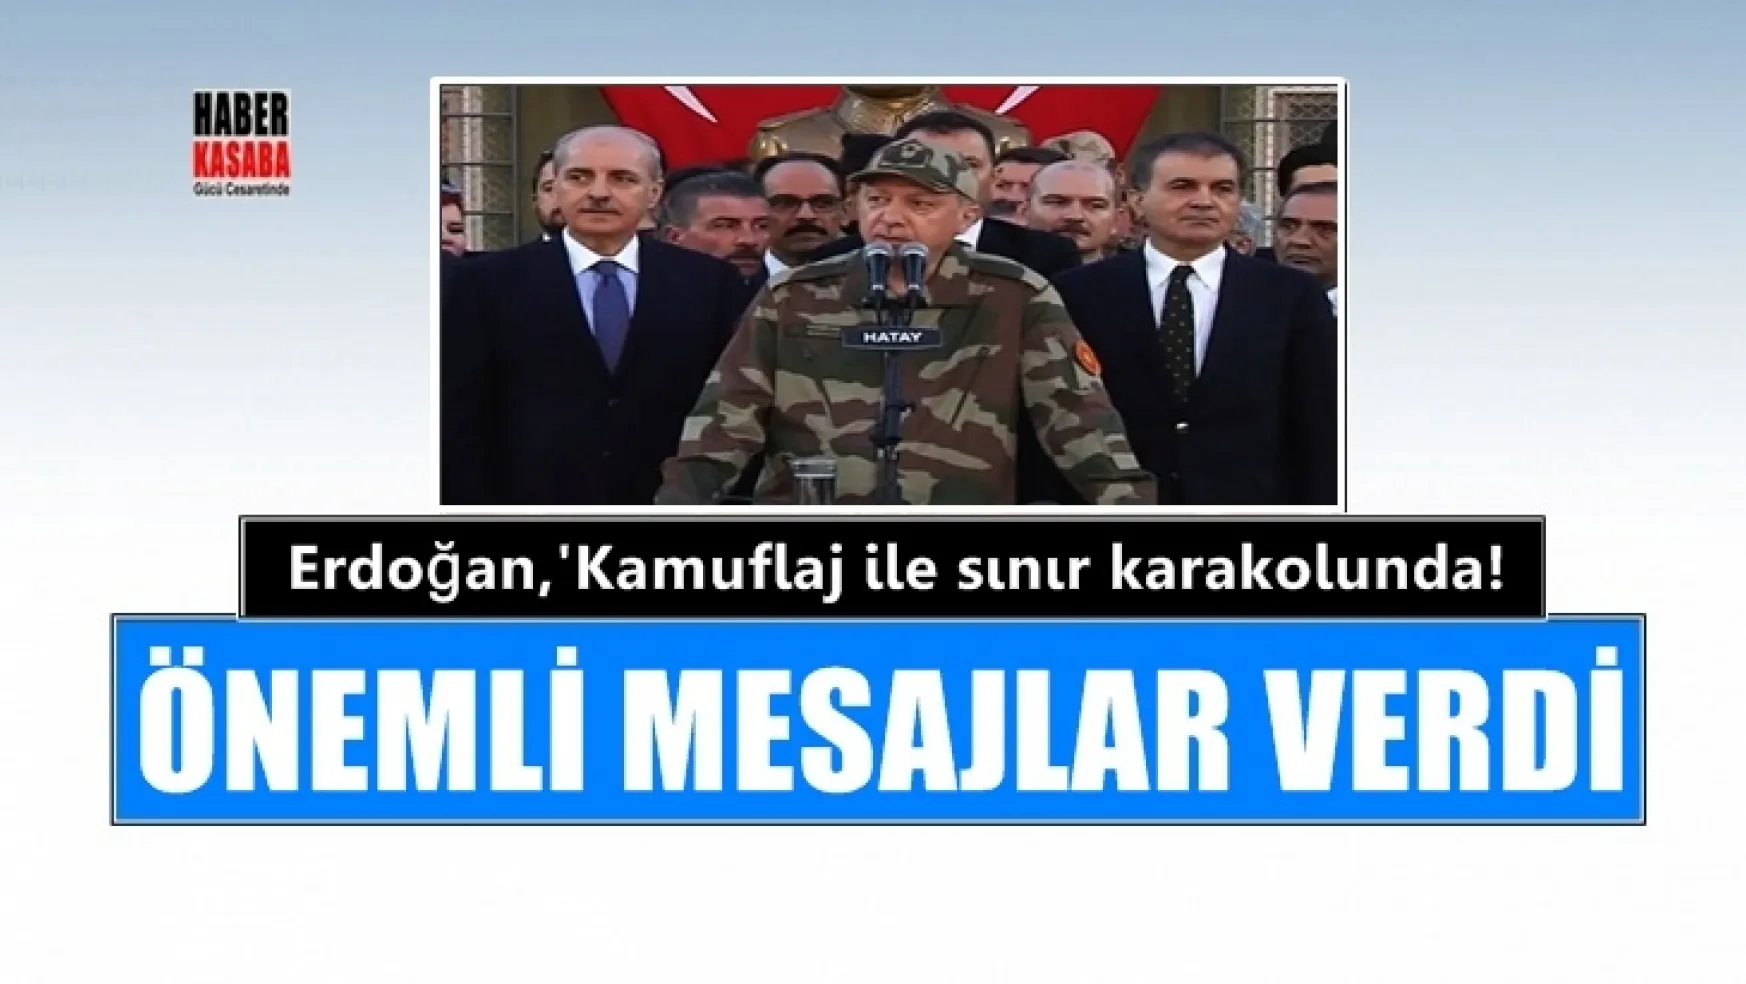 Cumhurbaşkanı Erdoğan, 'Kamuflaj ile sınır karakolunda!